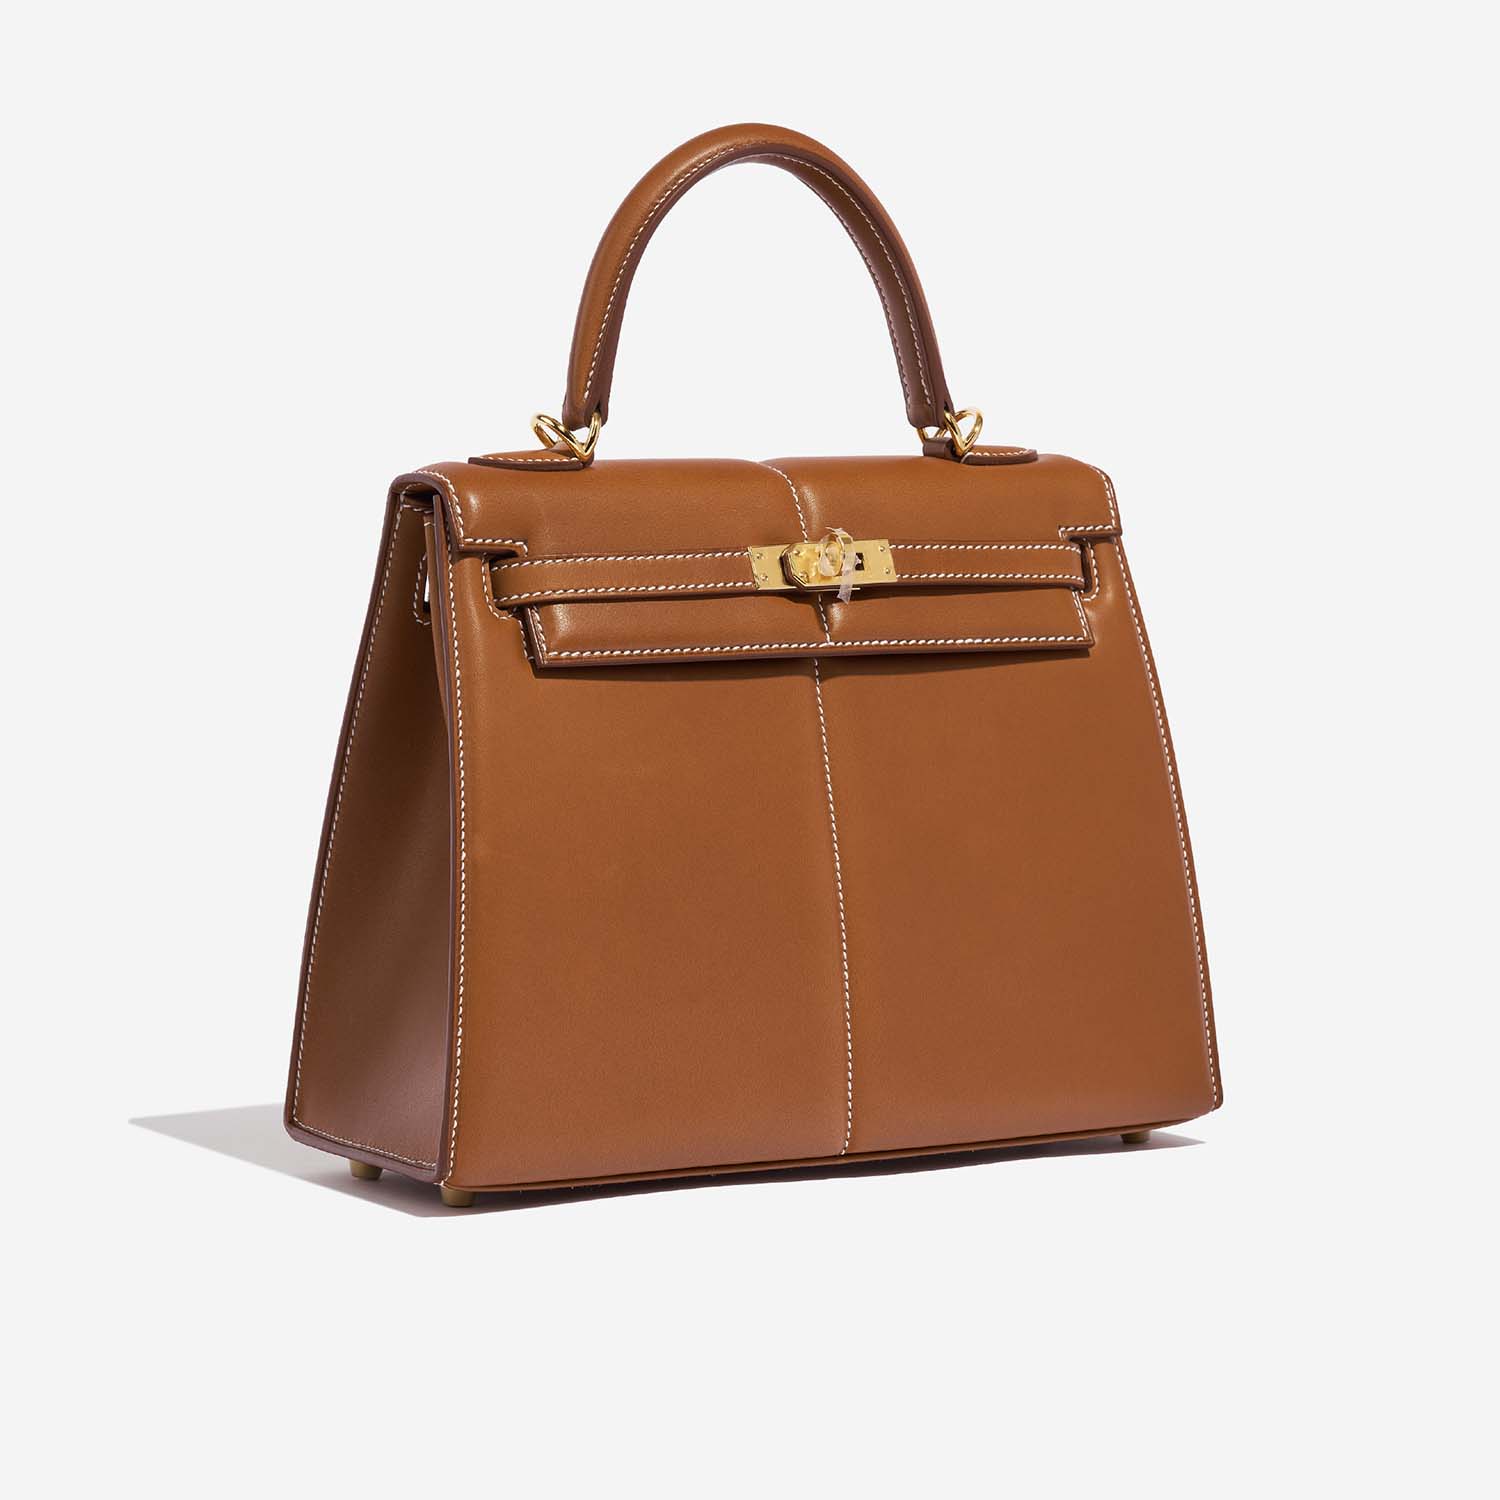 Hermès KellyPadded 25 Fauve Side Front | Verkaufen Sie Ihre Designer-Tasche auf Saclab.com